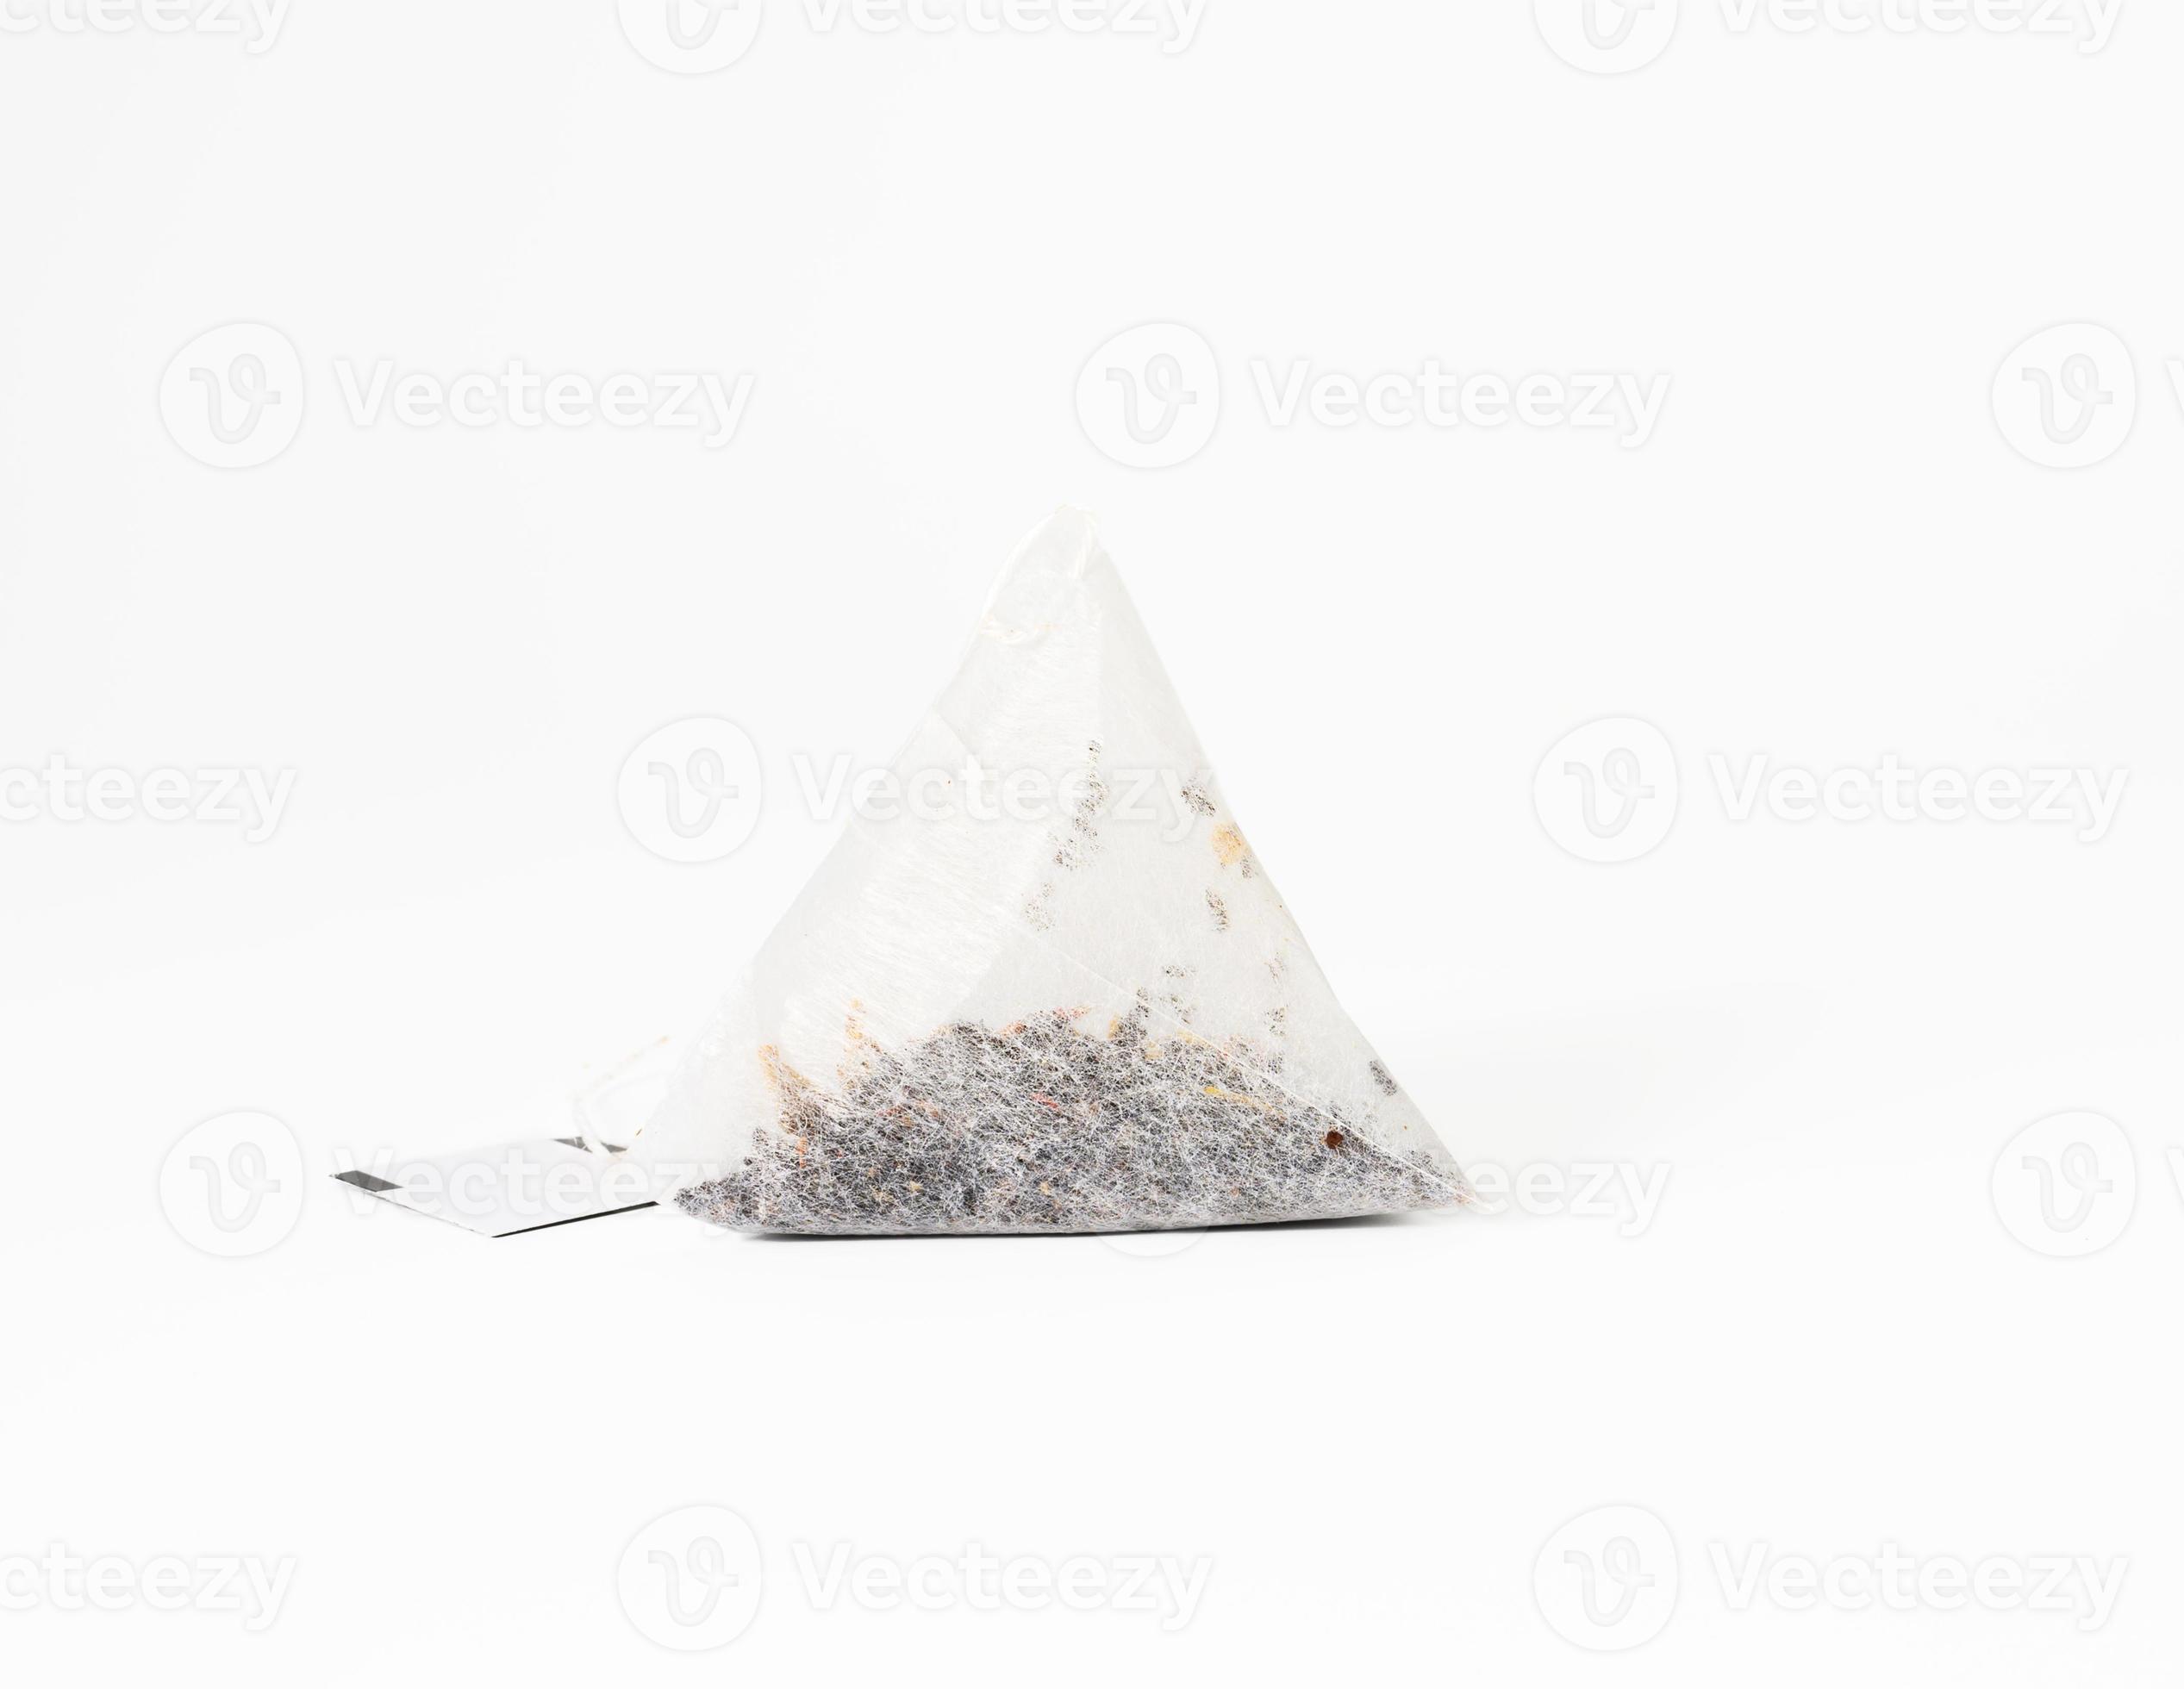 sachet de thé jetable triangulaire sur une corde, fond blanc